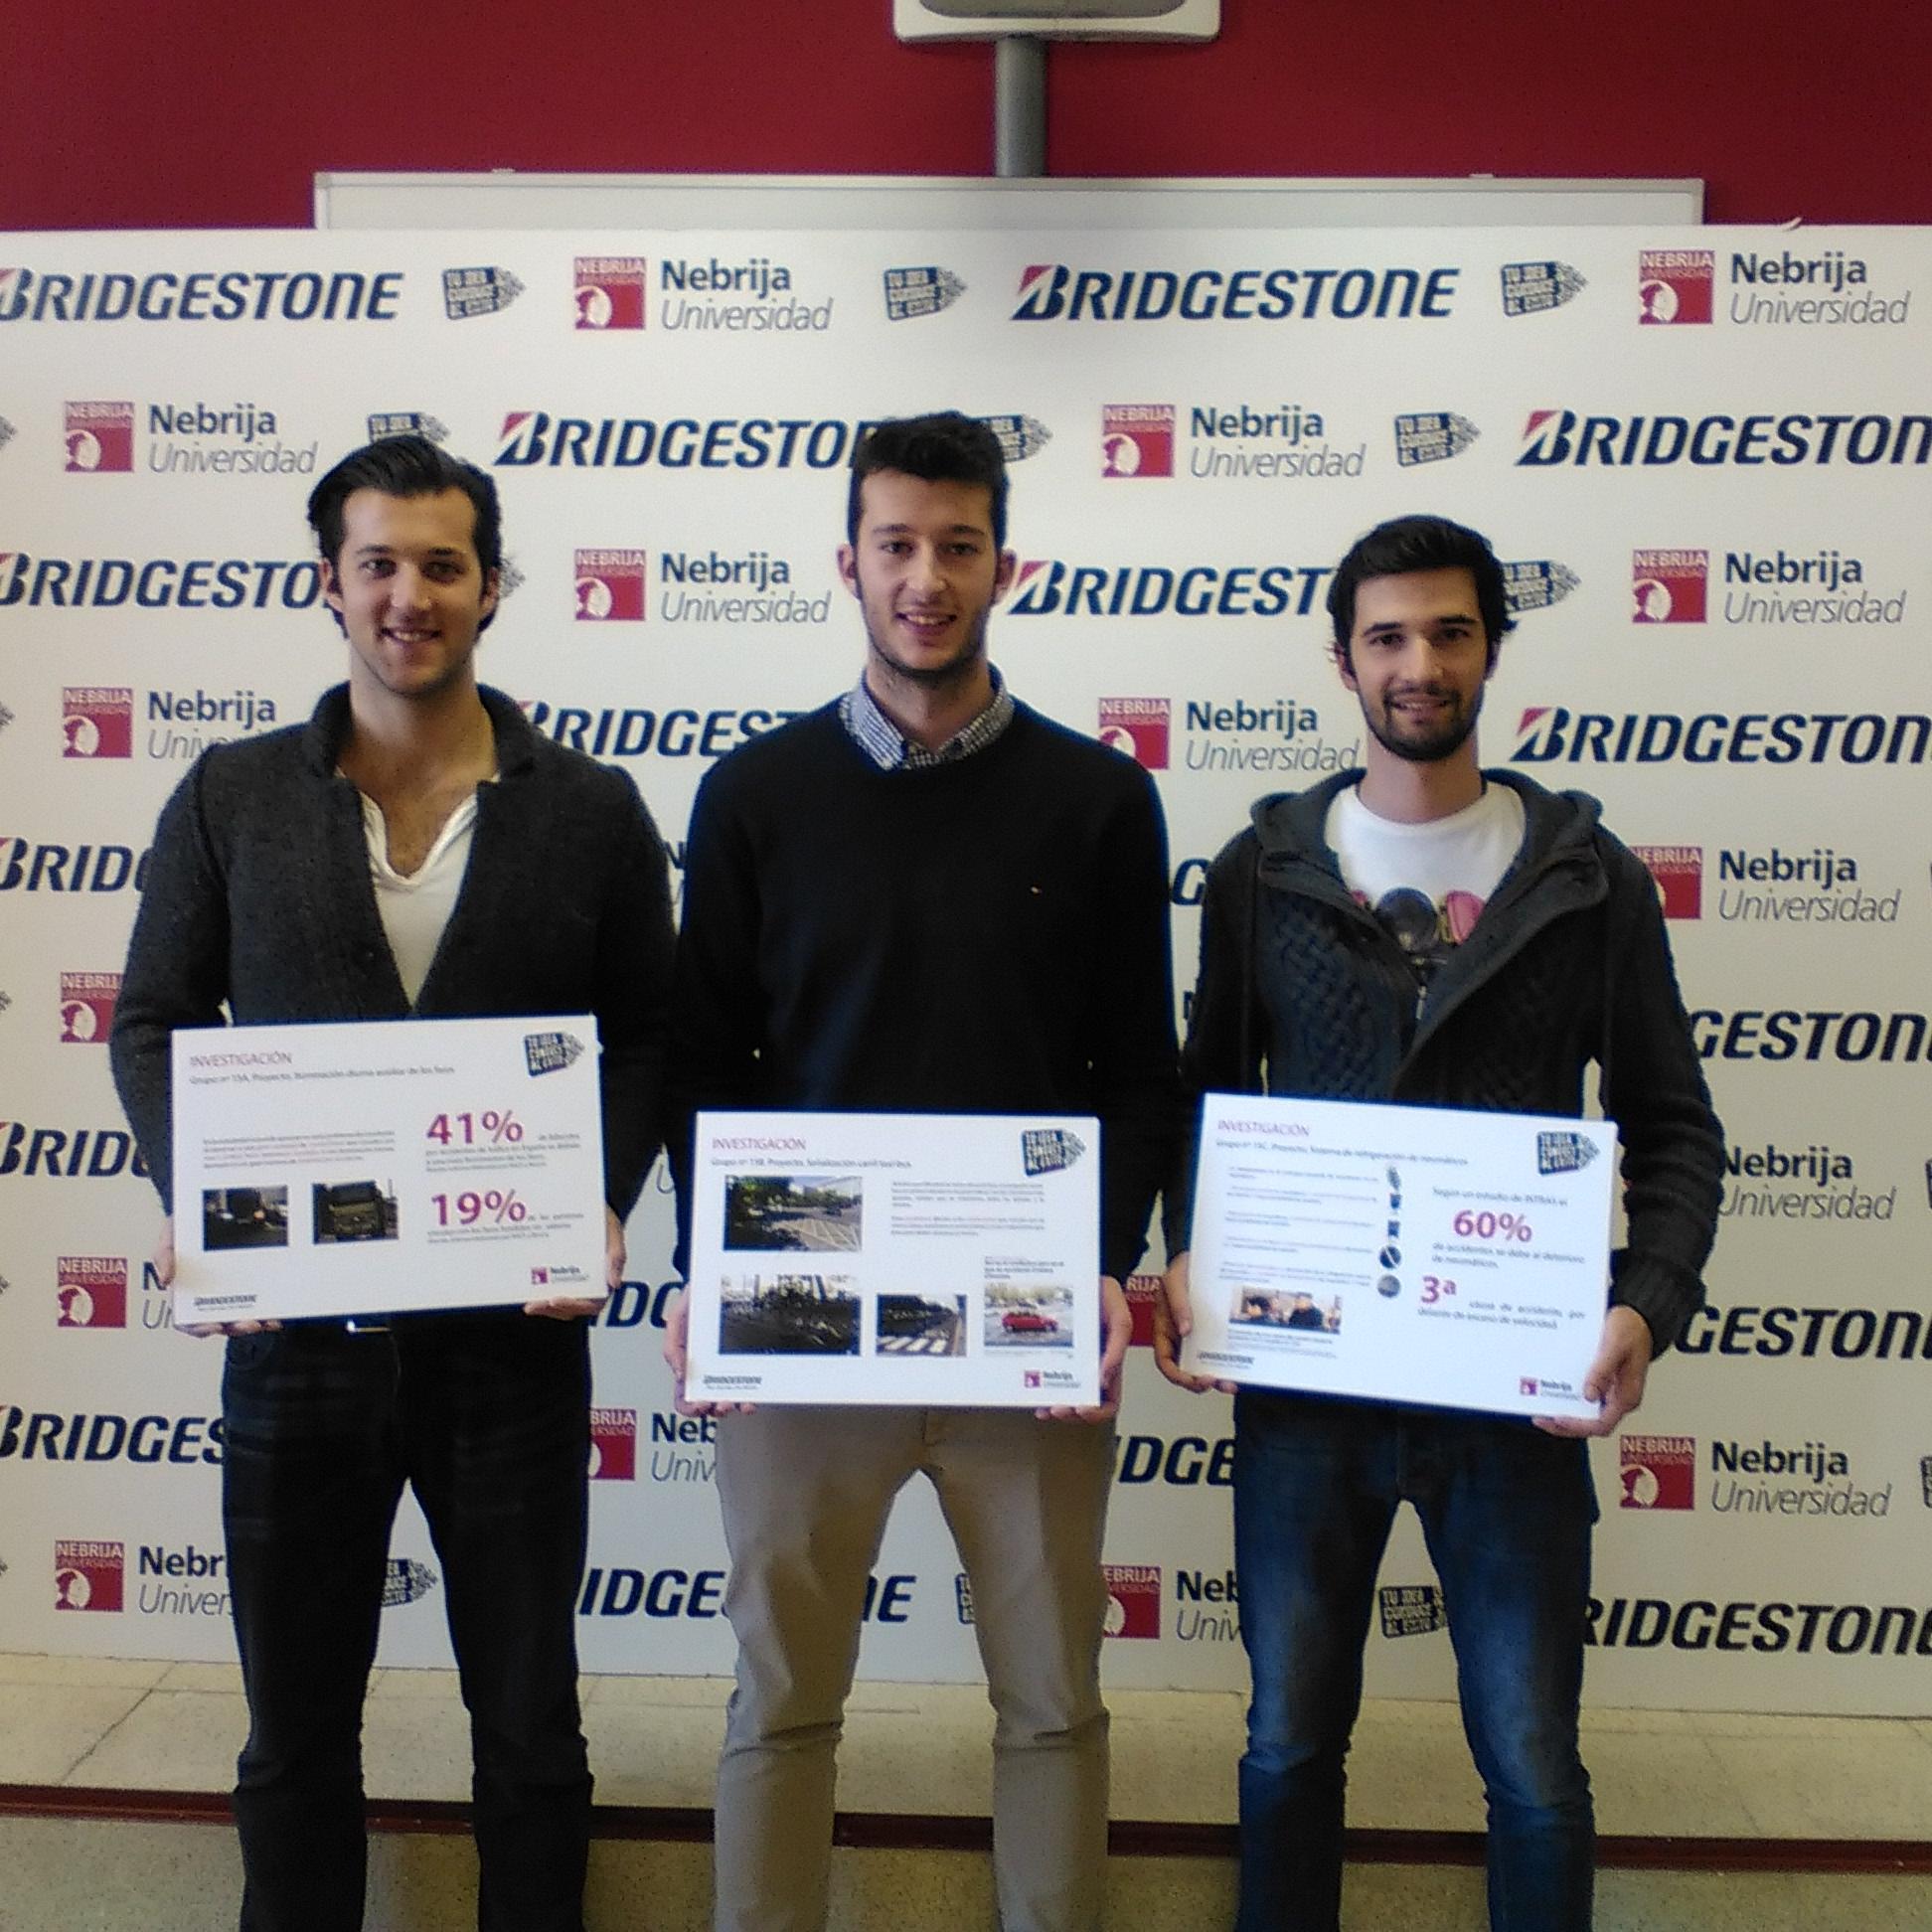 Esta cuenta está dedicada al concurso de Bridgestone en colaboración con la Universidad de Nebrija Tu idea conduce al éxito